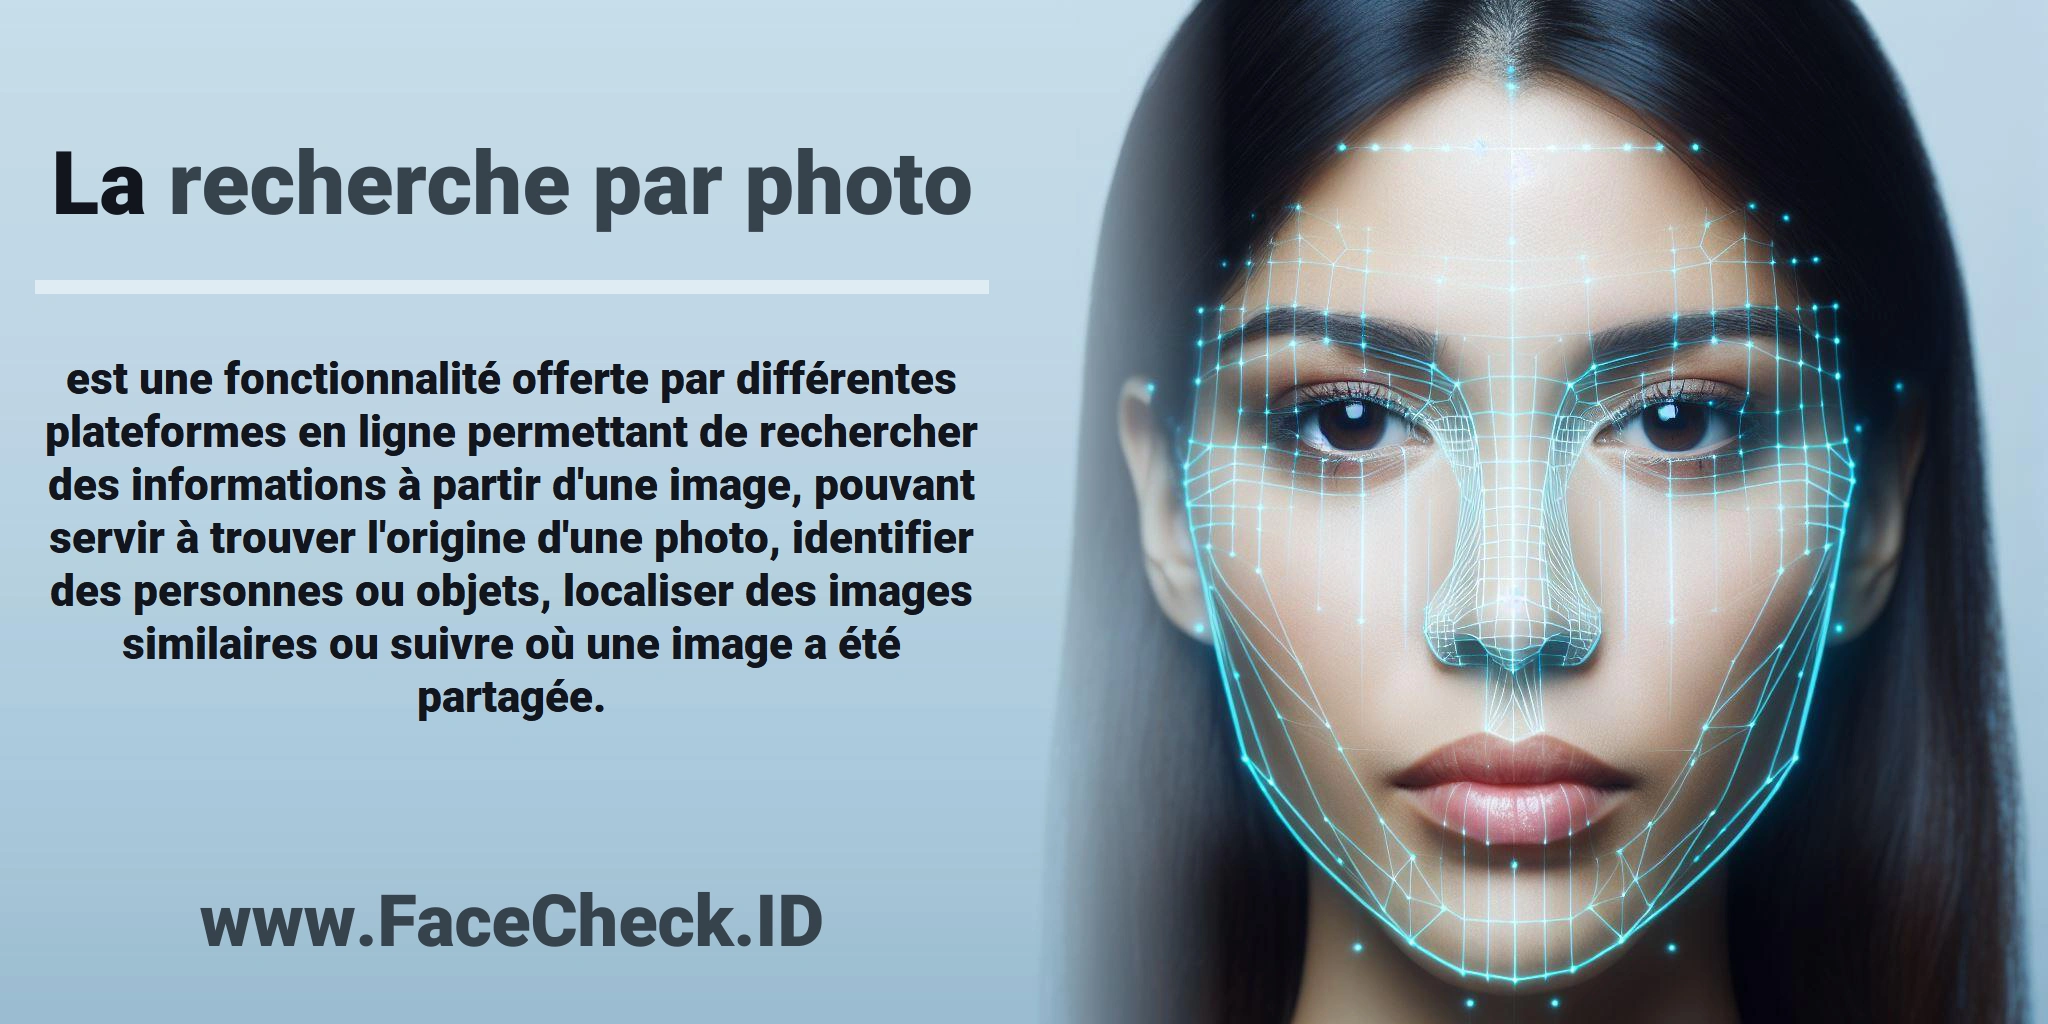 La <b>recherche par photo</b> est une fonctionnalité offerte par différentes plateformes en ligne permettant de rechercher des informations à partir d'une image, pouvant servir à trouver l'origine d'une photo, identifier des personnes ou objets, localiser des images similaires ou suivre où une image a été partagée.